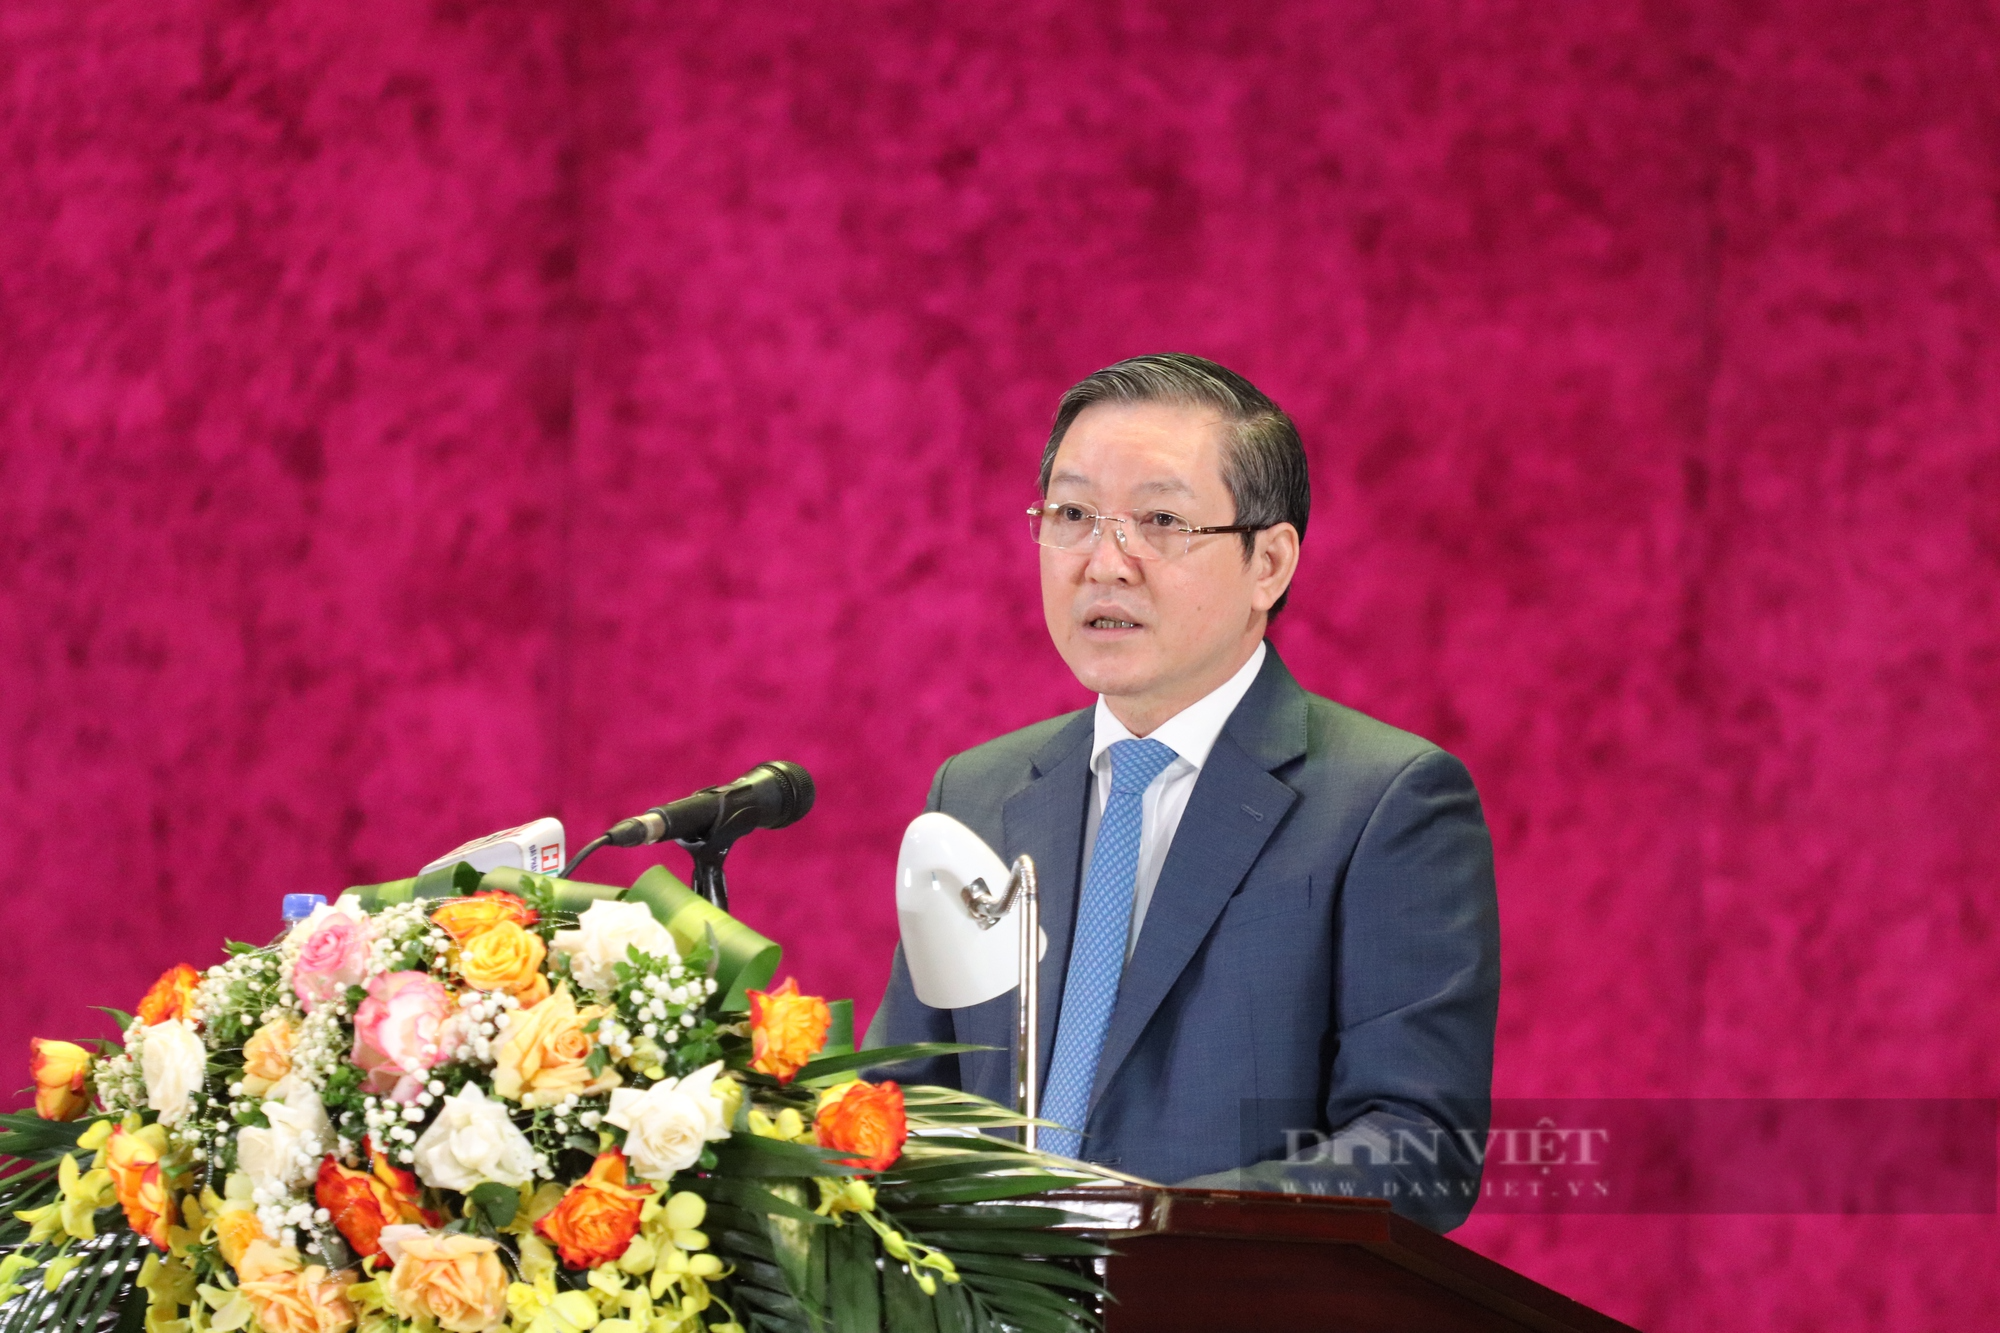 Chủ tịch Hội NDVN Lương Quốc Đoàn gợi mở những vấn đề quan trọng tại Đại hội đại biểu Hội ND tỉnh Hòa Bình- Ảnh 1.